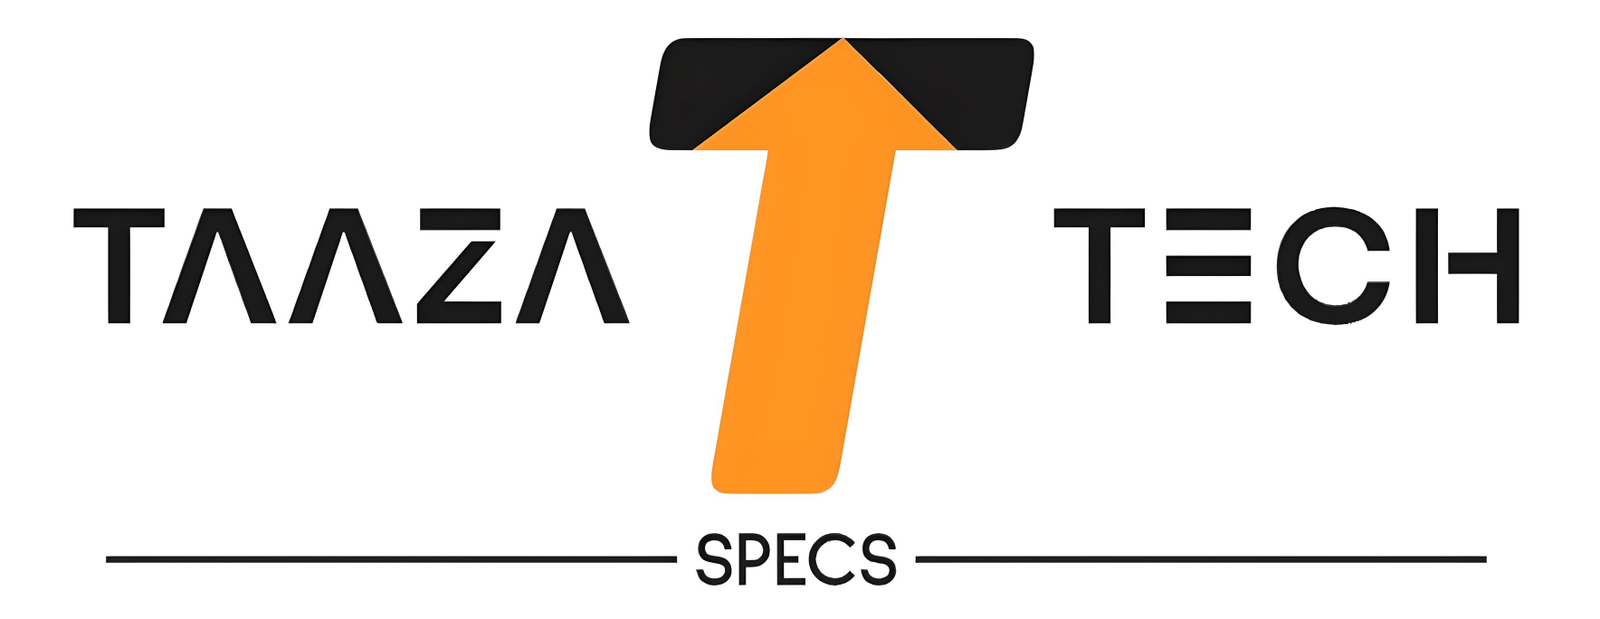 taazatechspecs.com